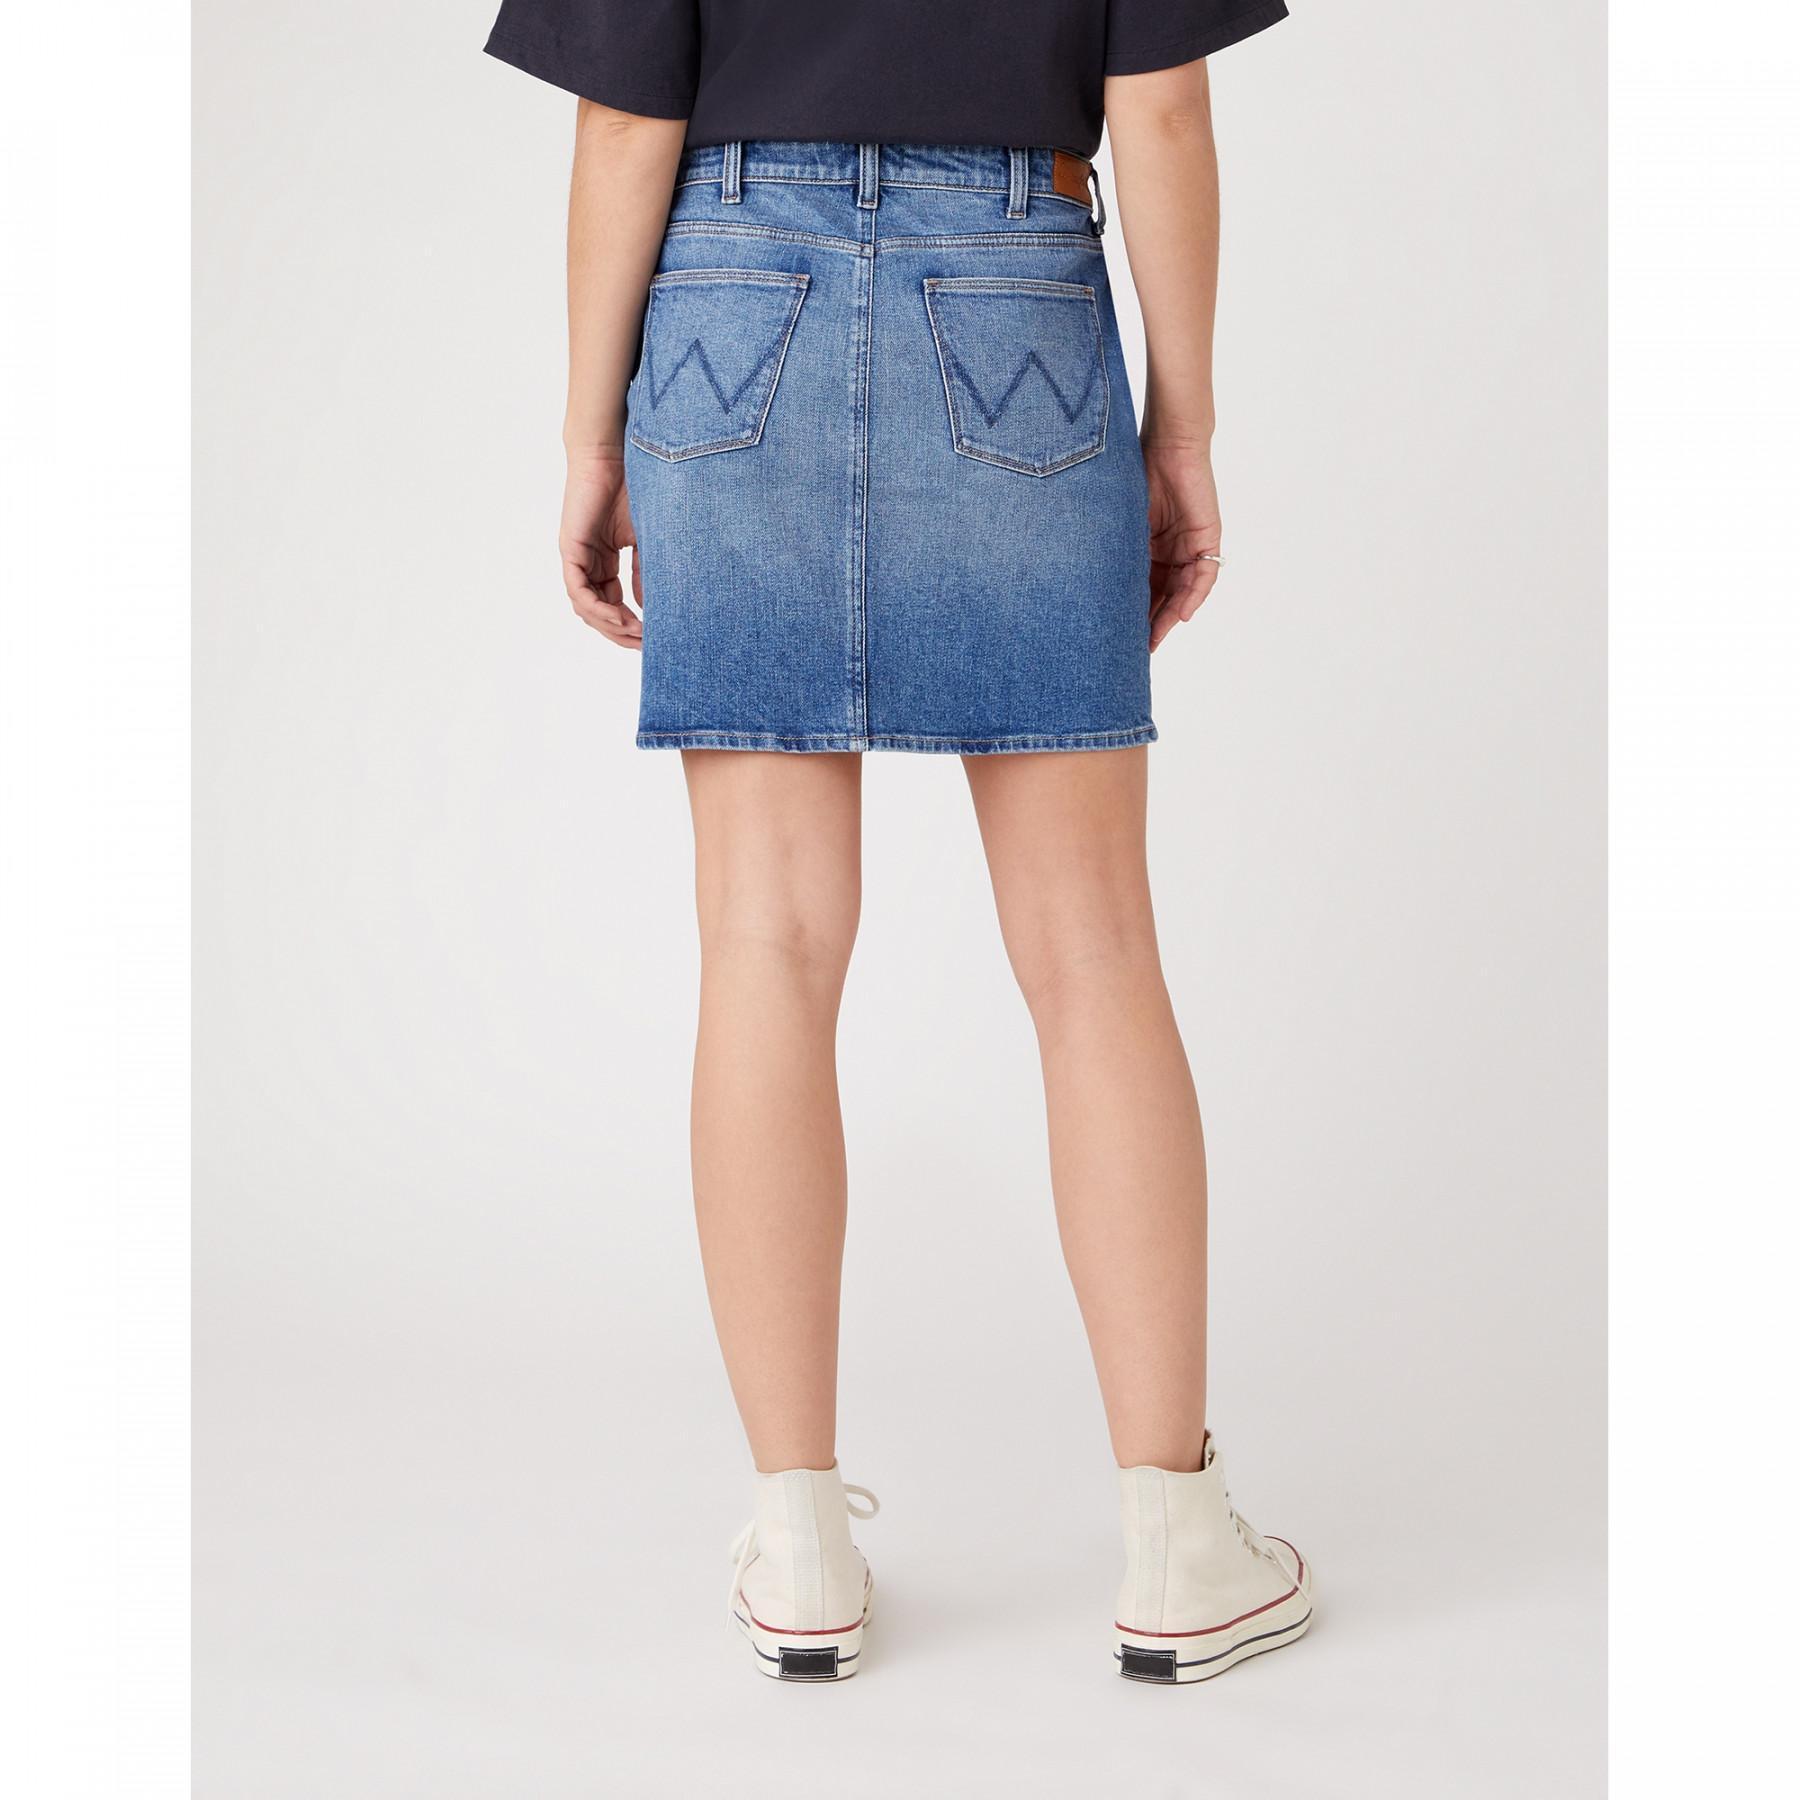 Women's denim skirt Wrangler Mid Length Sandy